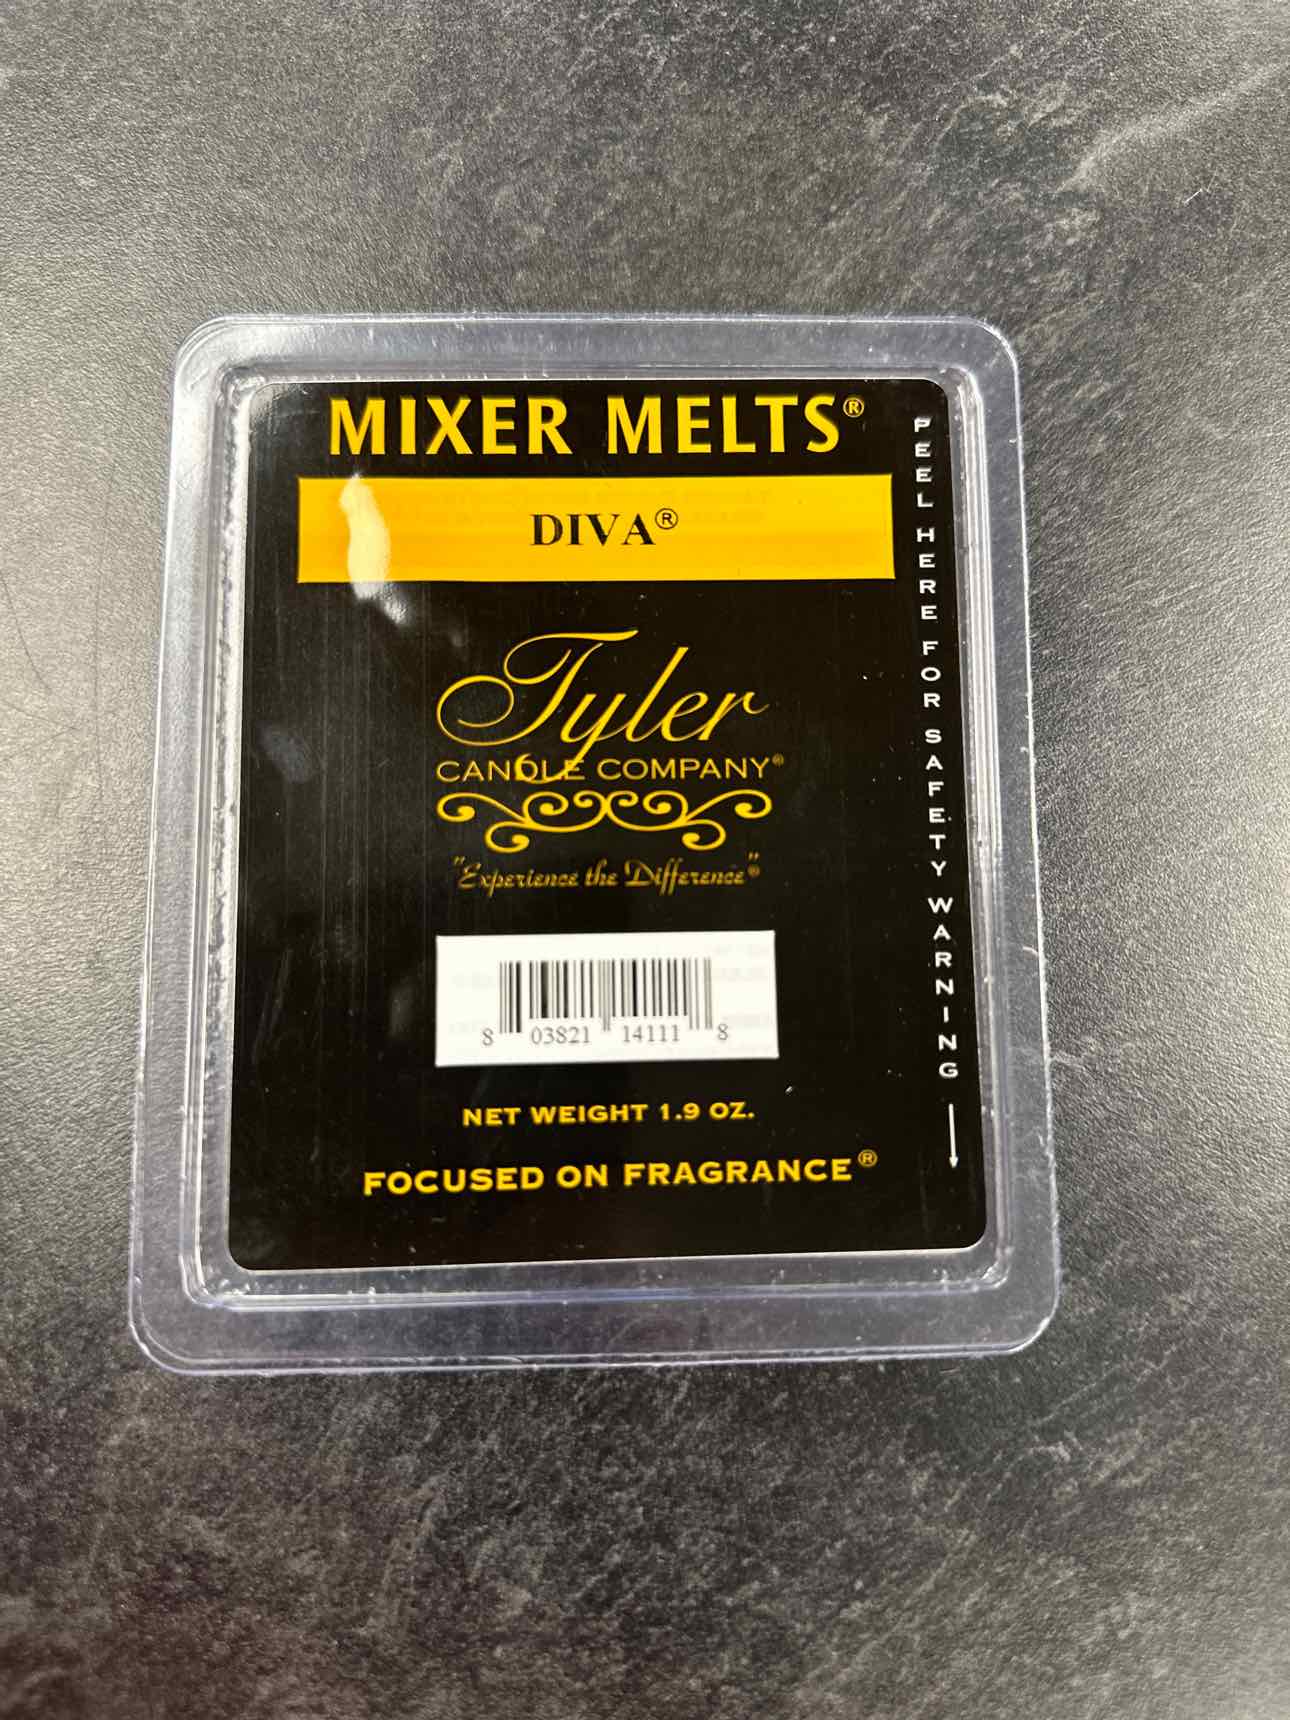 Mixer Melt - Diva